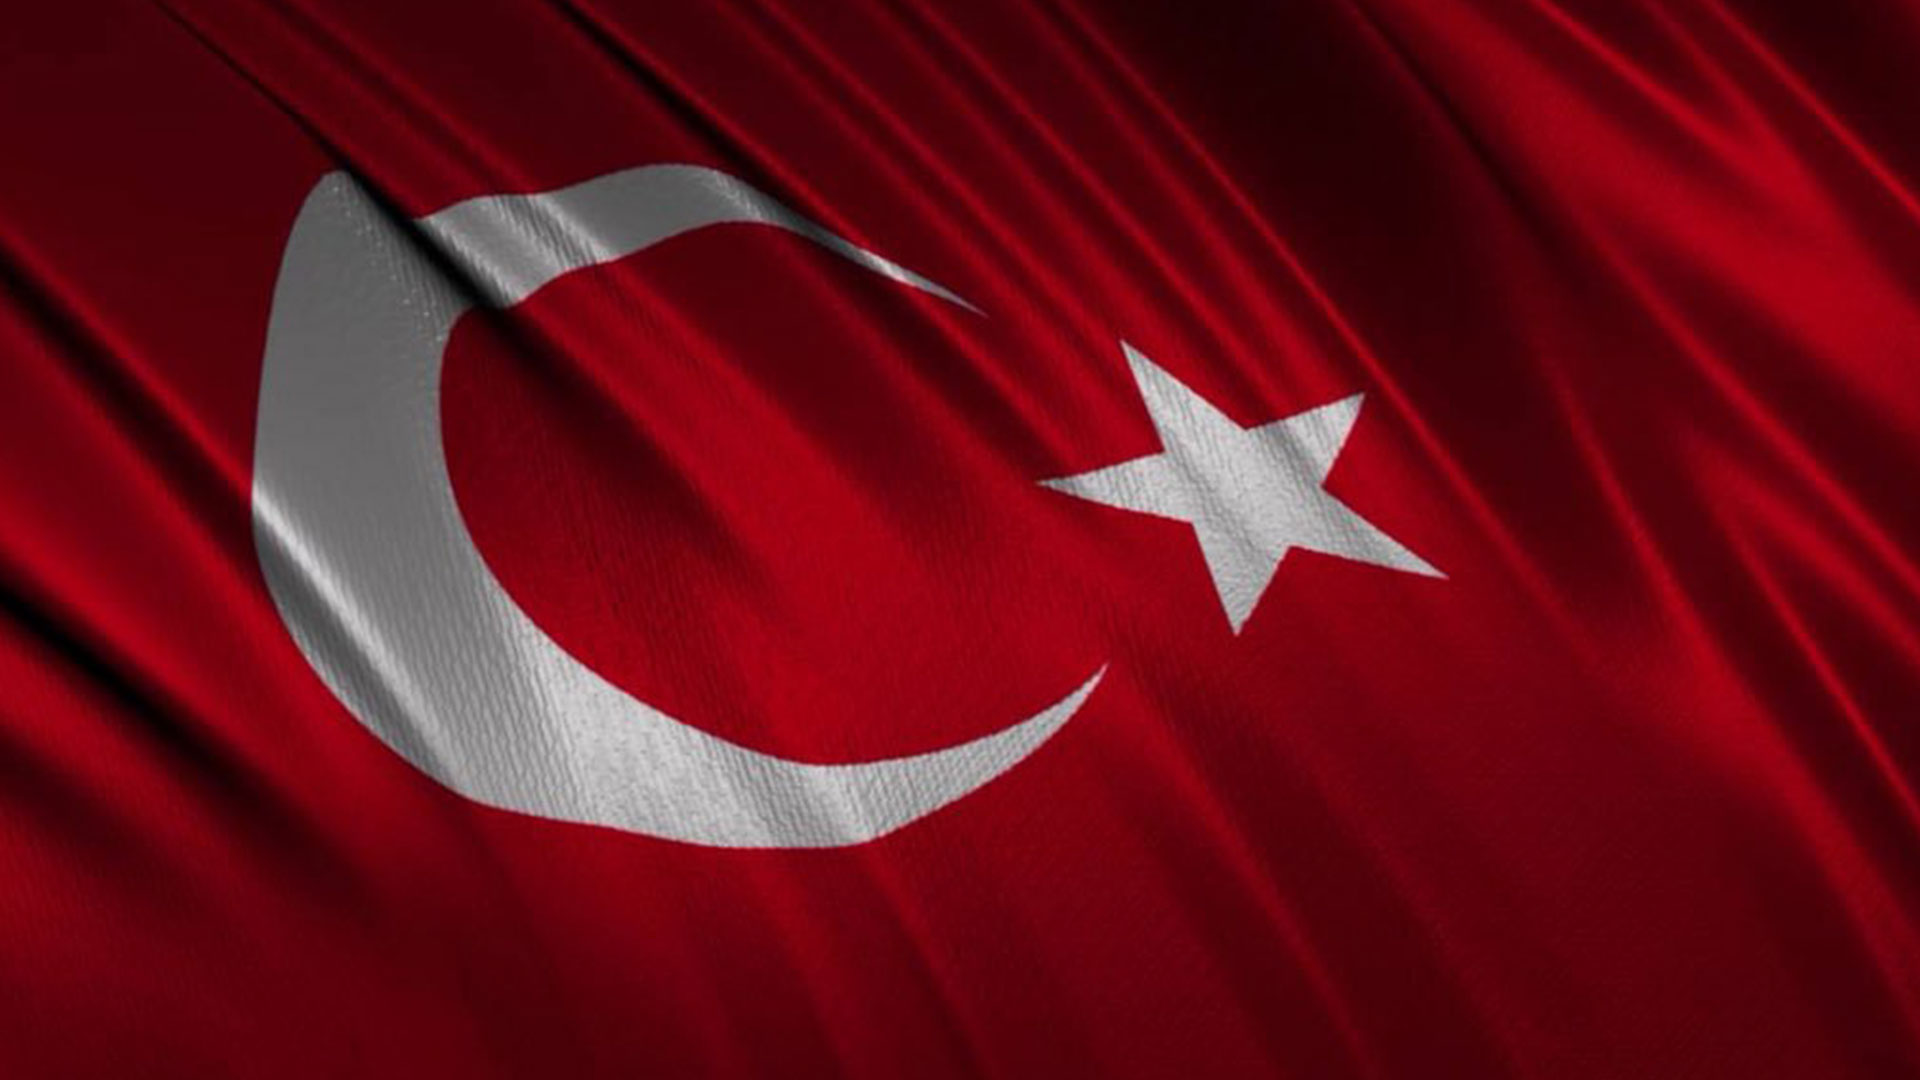 turk bayragi resimleri 2020 9